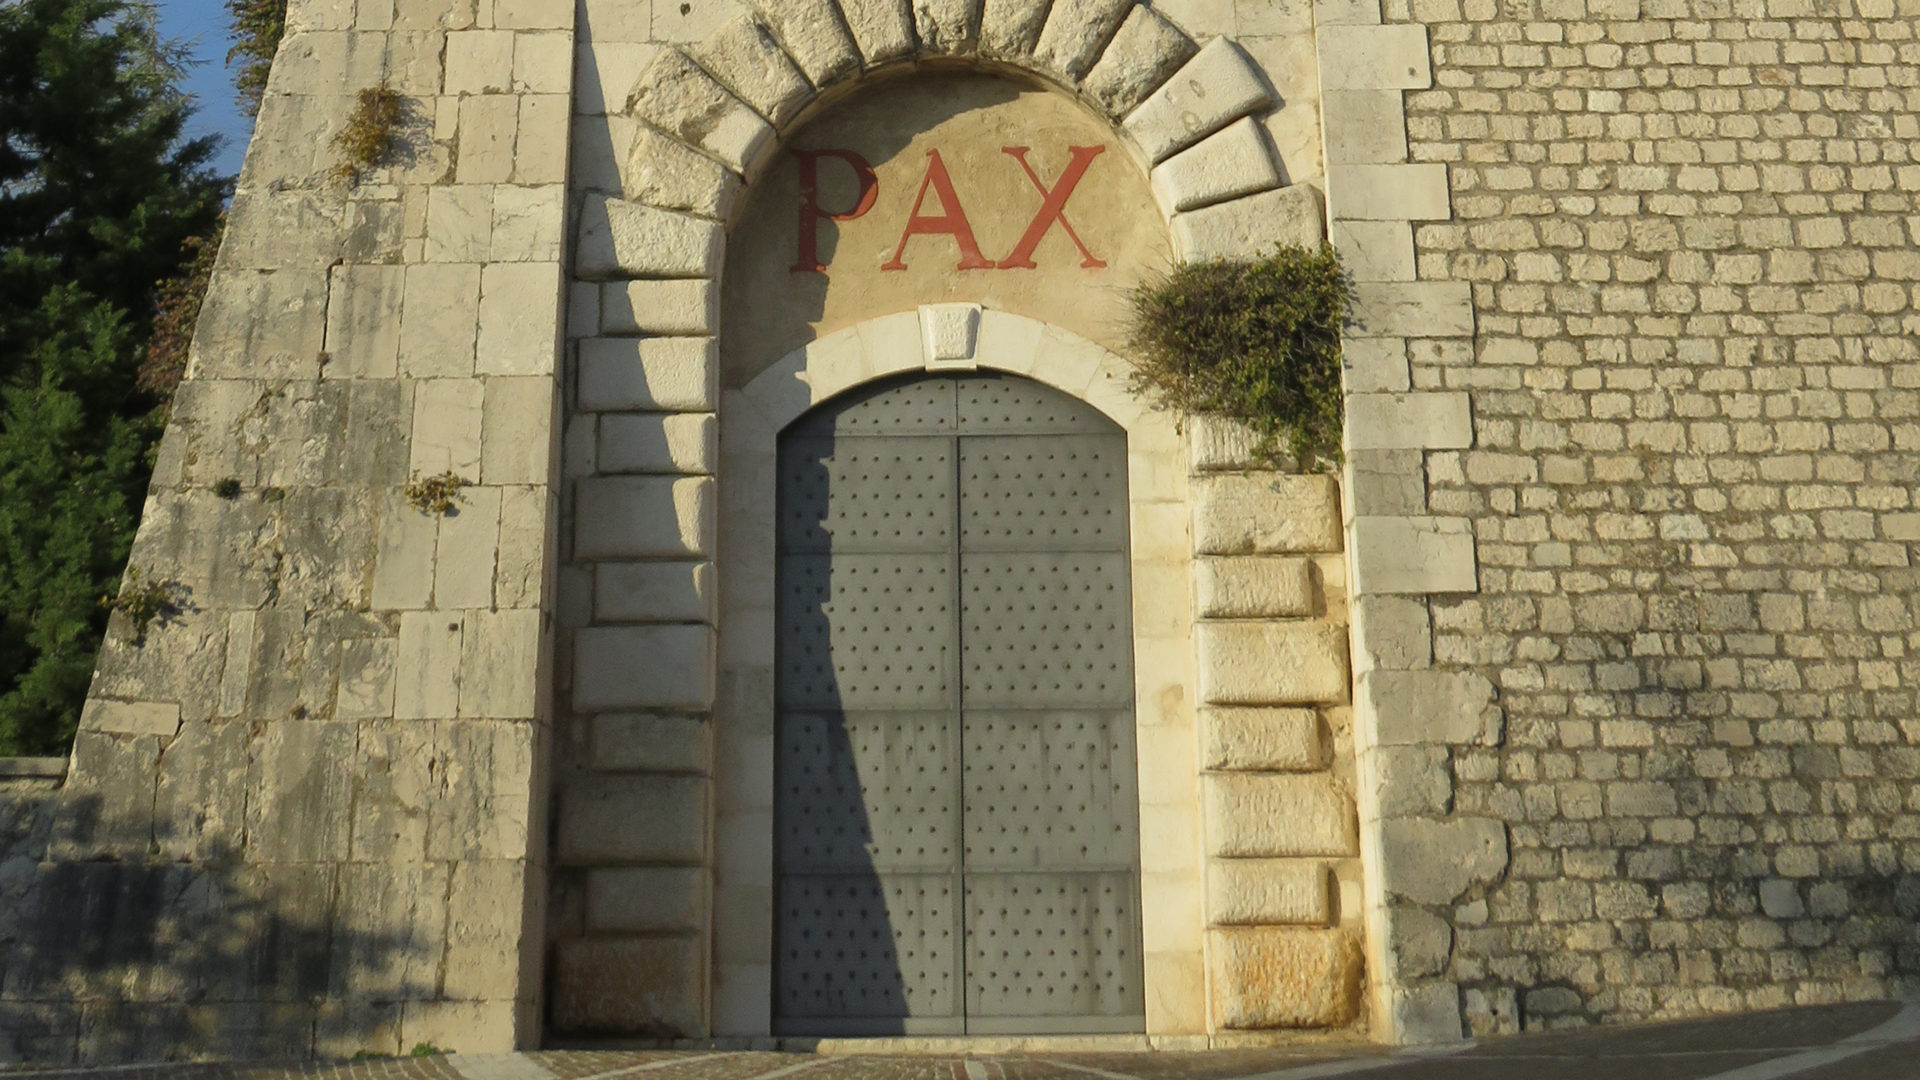 Friedensgruss über der Eingangstür des benediktinischen Ur-Klosters Montecassino.